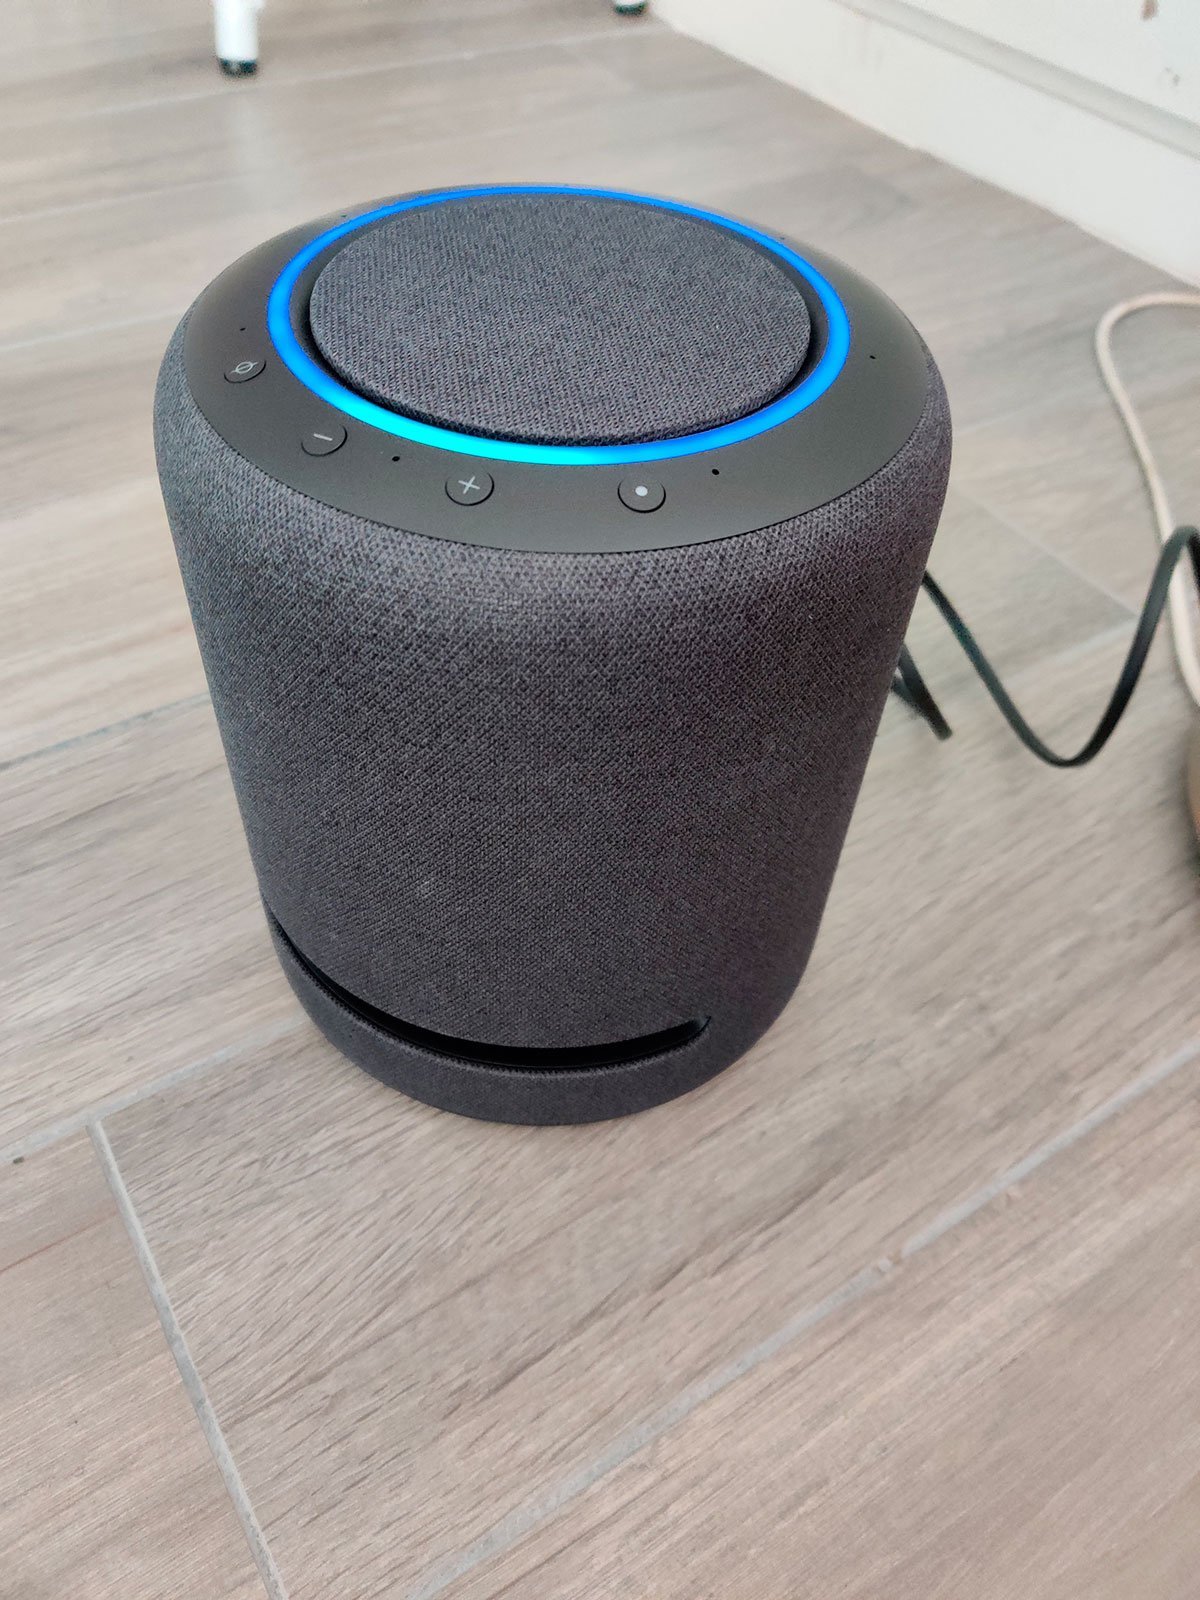 Echo Studio | Notre enceinte connectée Bluetooth et Wi-Fi aux meilleures  performances audio | Avec Dolby Atmos, son spatial, hub connecté et Alexa 